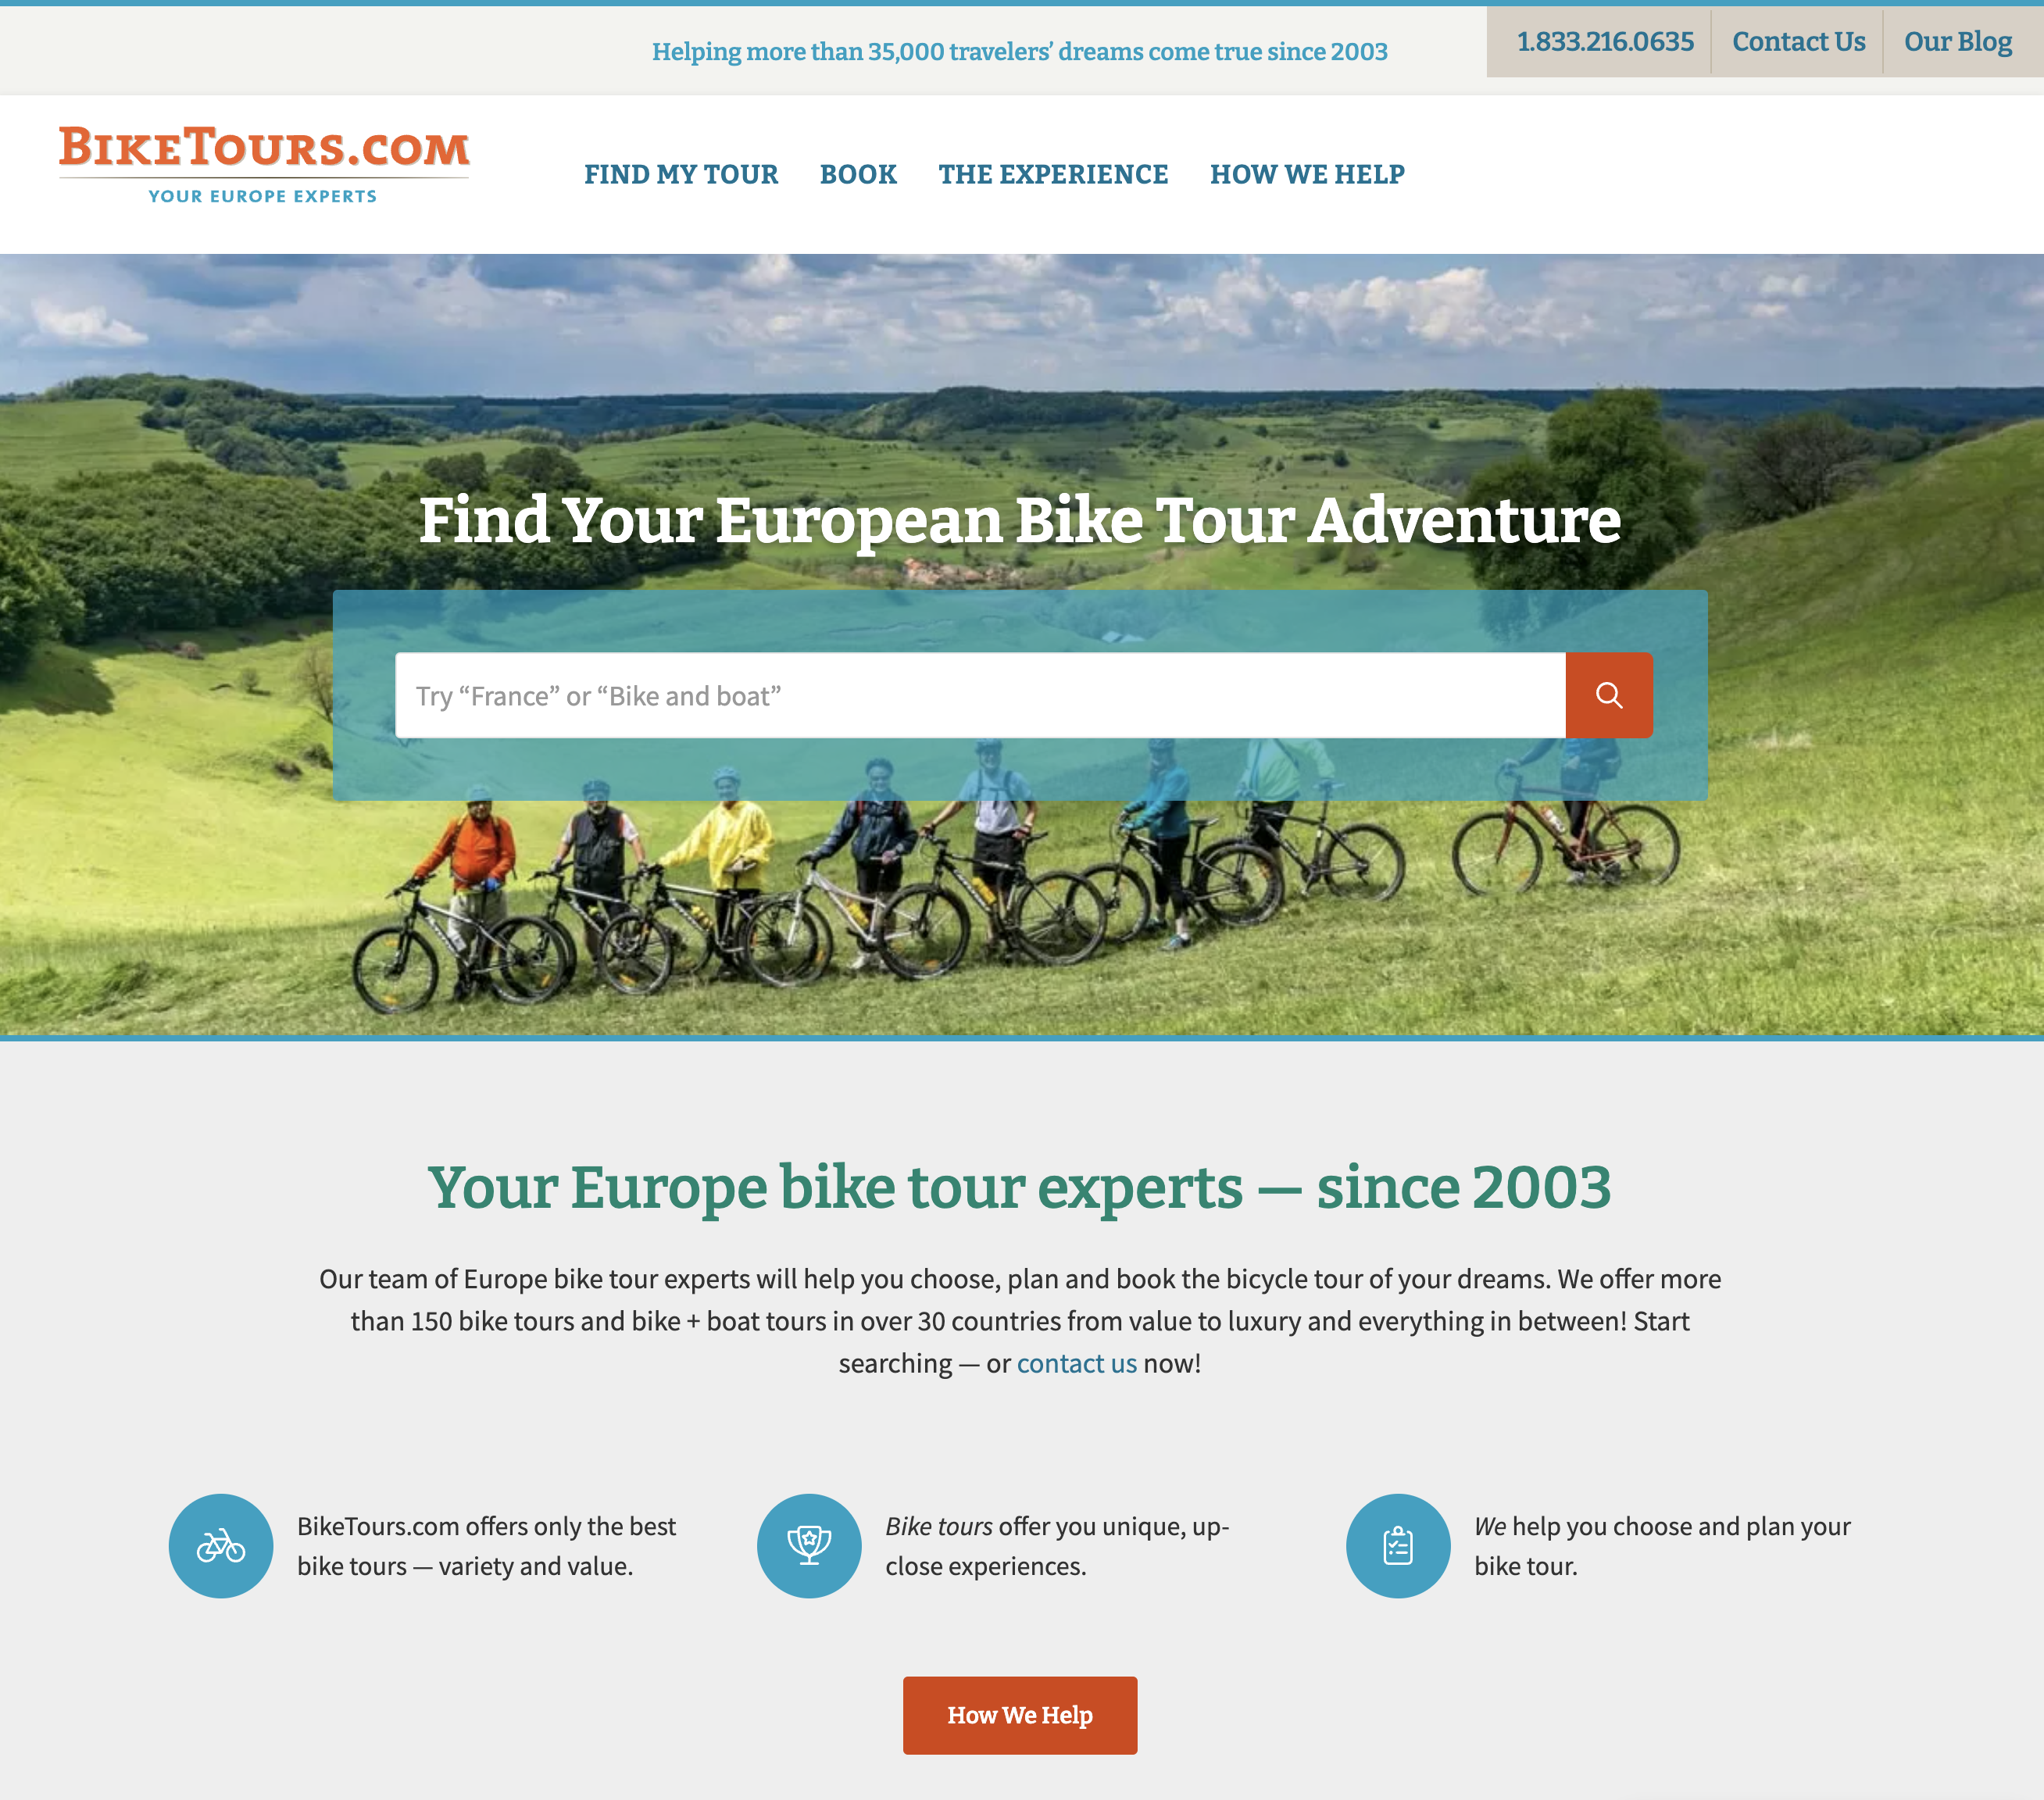 BikeTours.com